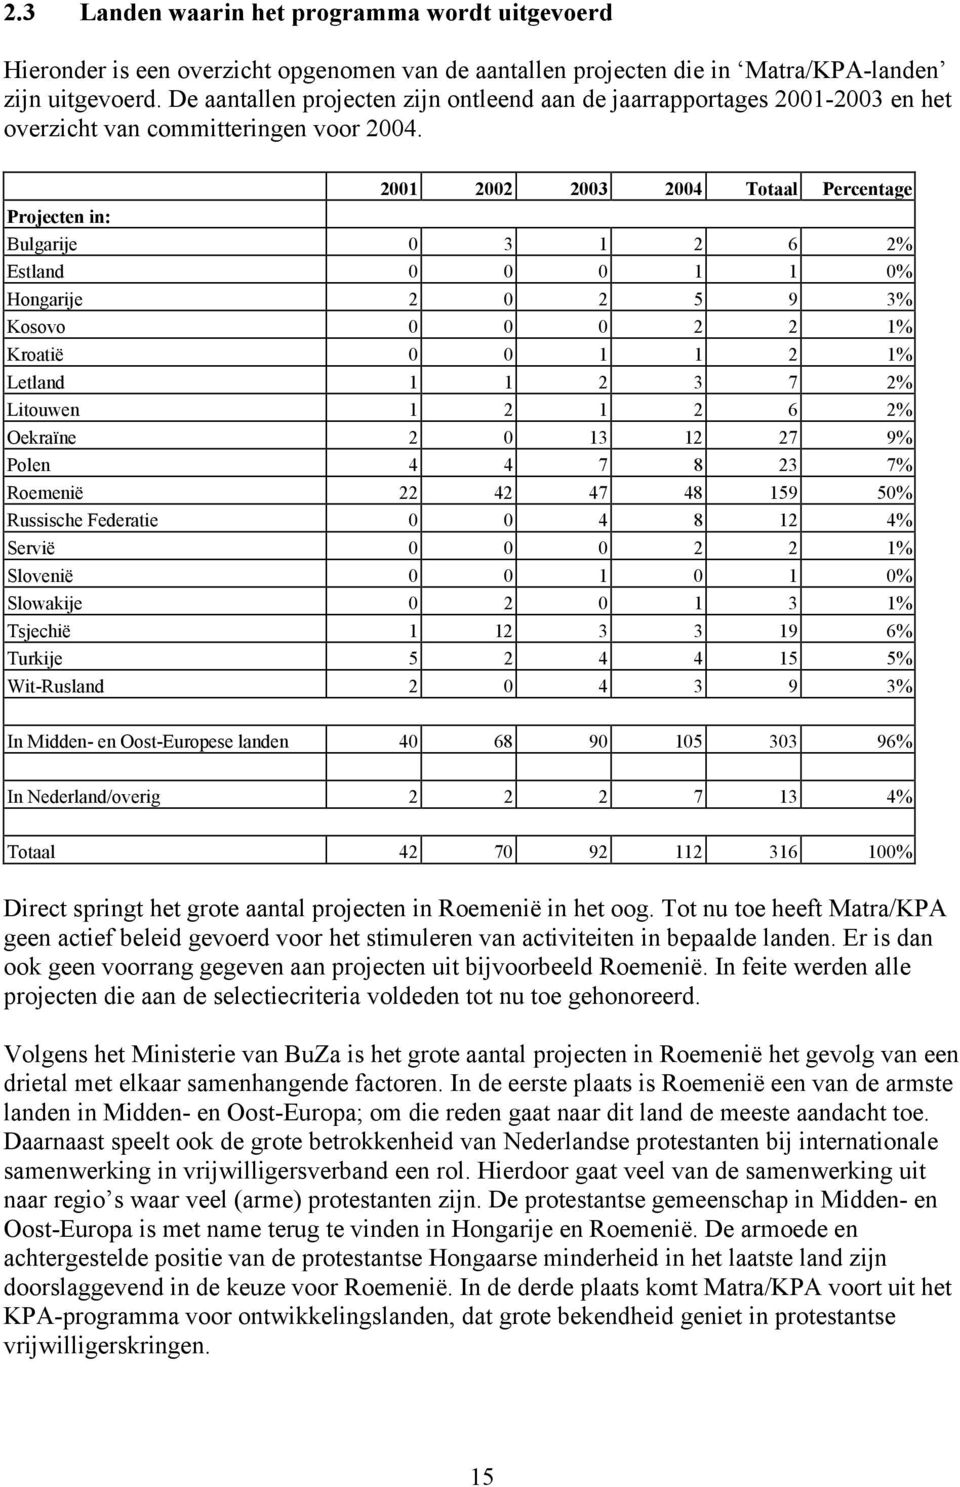 2001 2002 2003 2004 Totaal Percentage Projecten in: Bulgarije 0 3 1 2 6 2% Estland 0 0 0 1 1 0% Hongarije 2 0 2 5 9 3% Kosovo 0 0 0 2 2 1% Kroatië 0 0 1 1 2 1% Letland 1 1 2 3 7 2% Litouwen 1 2 1 2 6